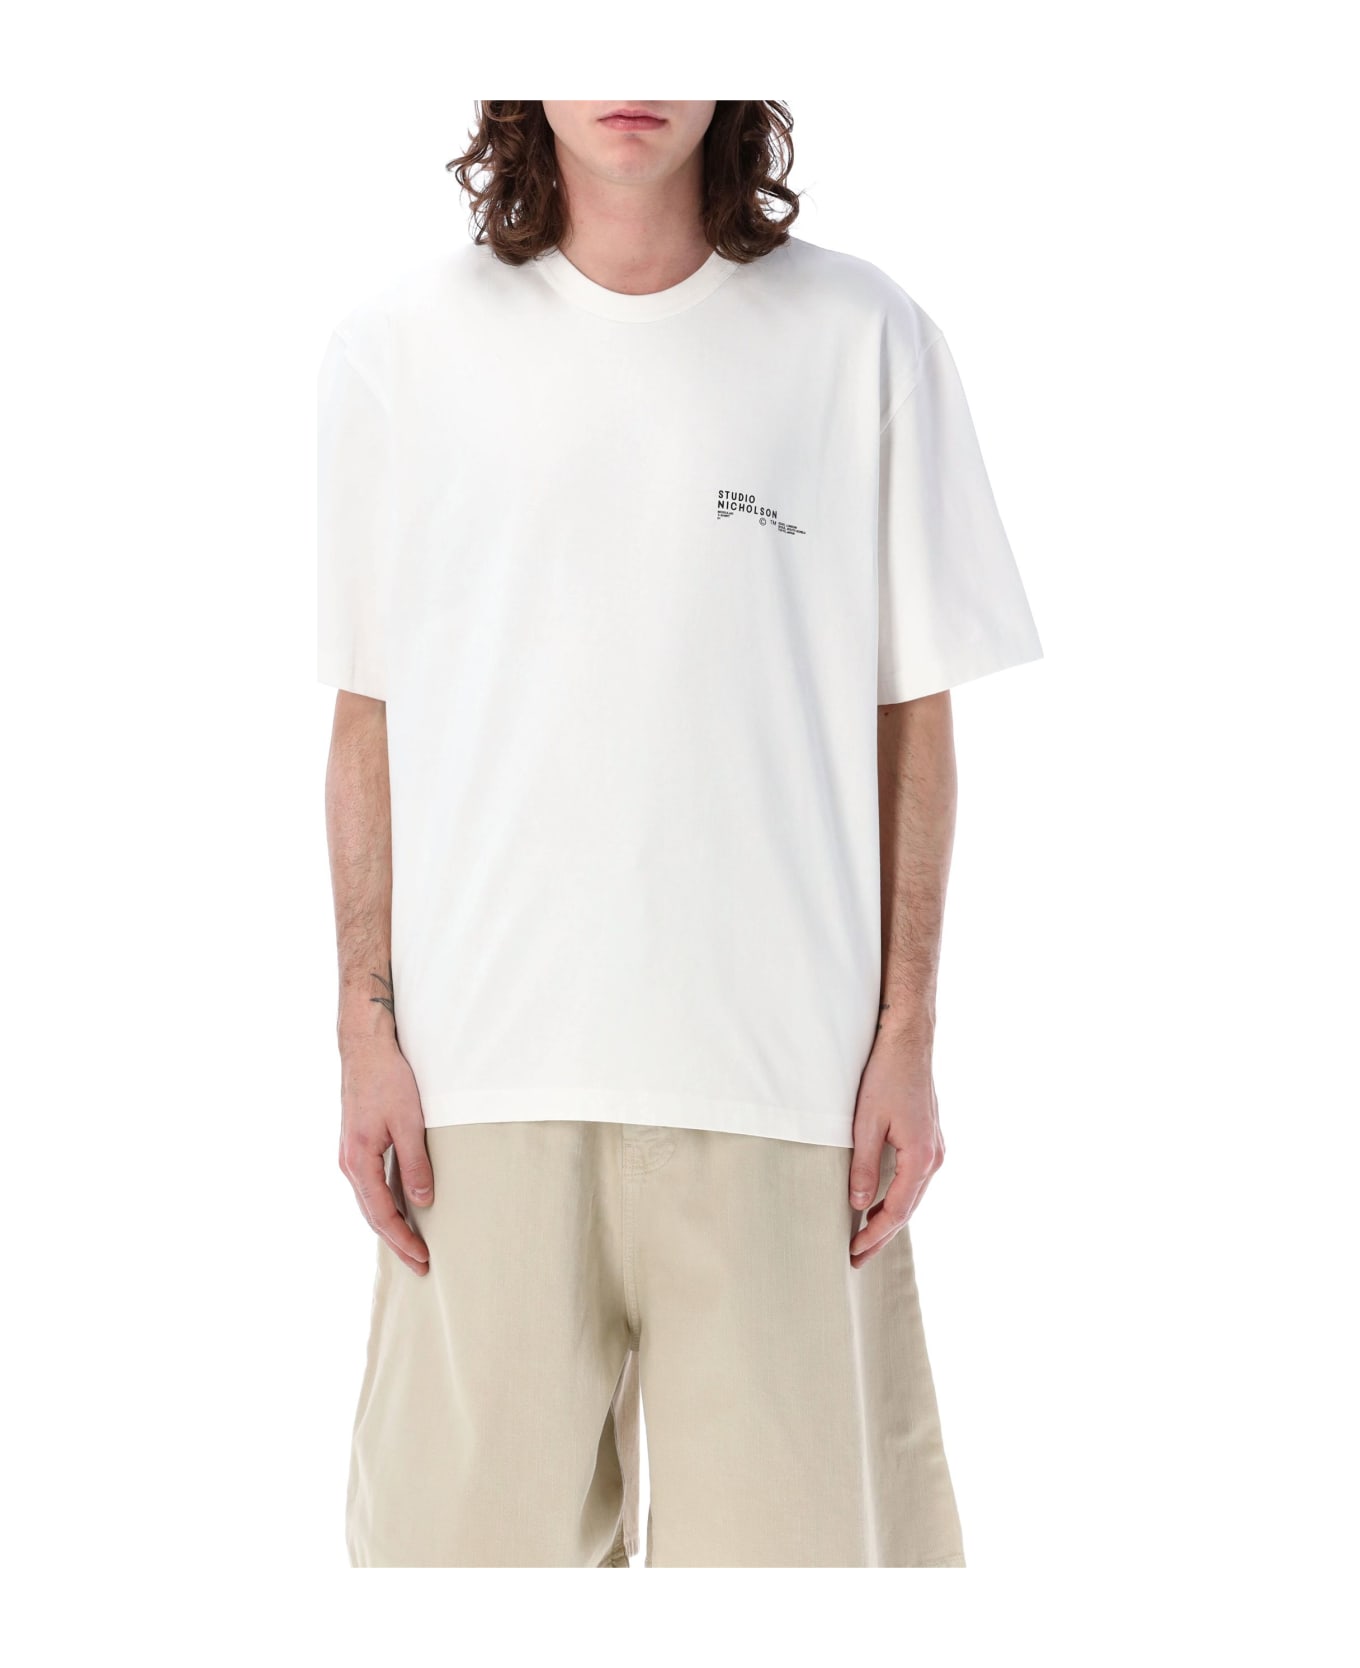 Studio Nicholson Module T-shirt - WHITE シャツ